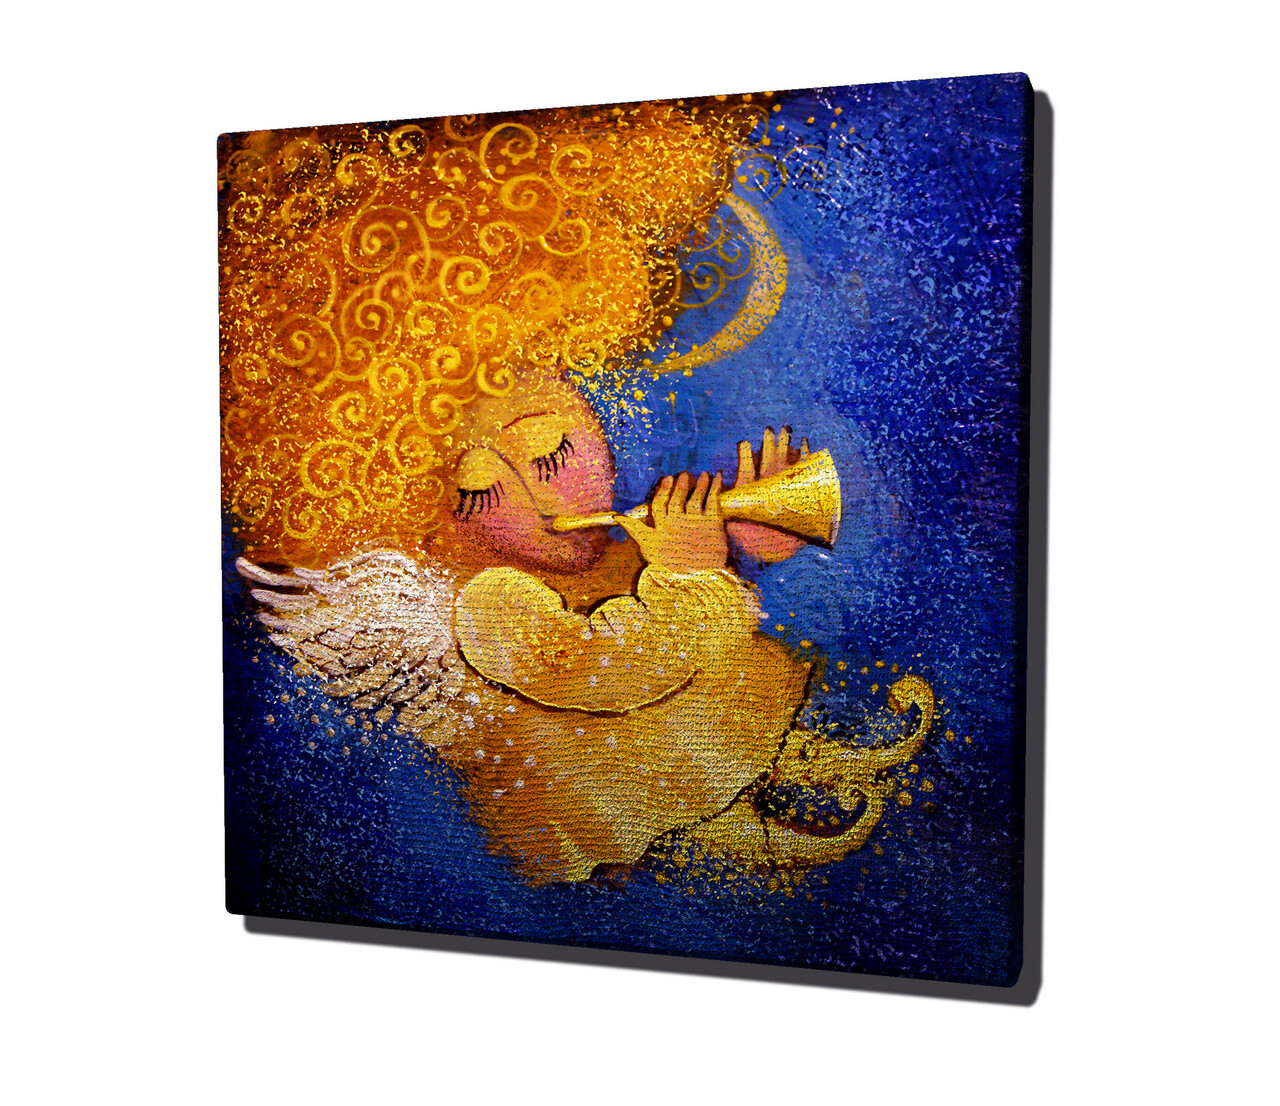 Tablou Decorativ, KC069, Canvas, Dimensiune: 45 X 45 Cm, Multicolor